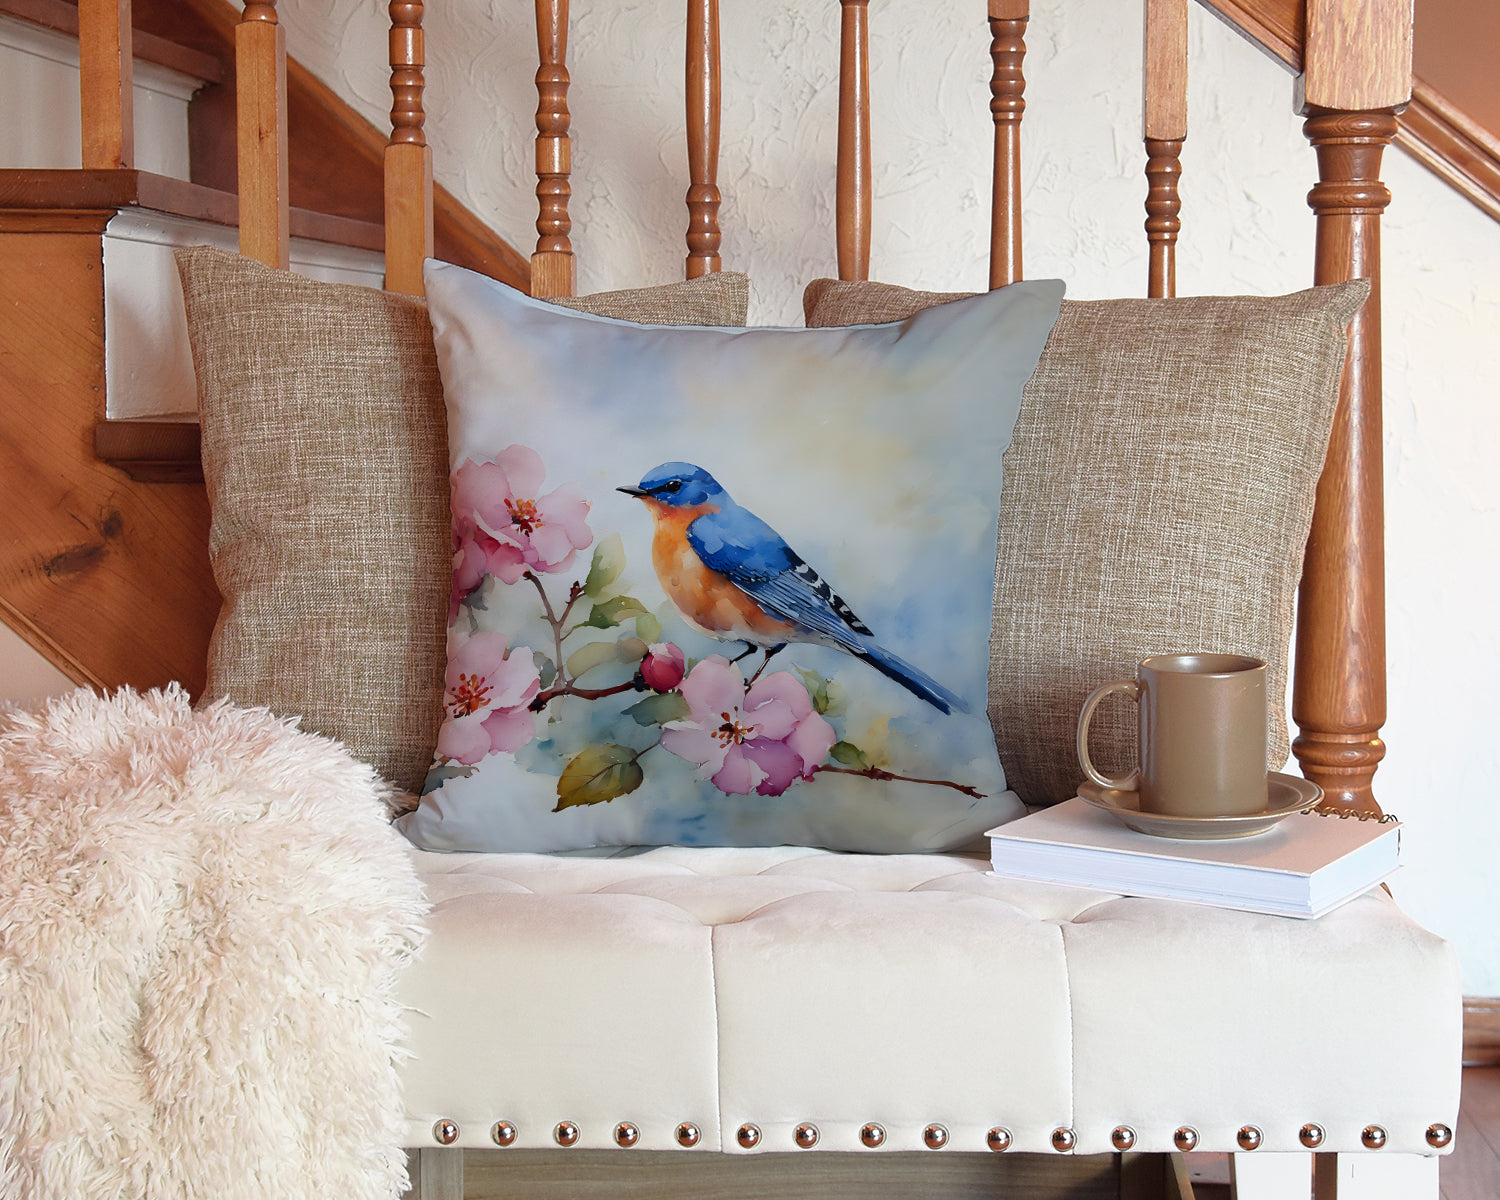 Bluebird Throw Pillow